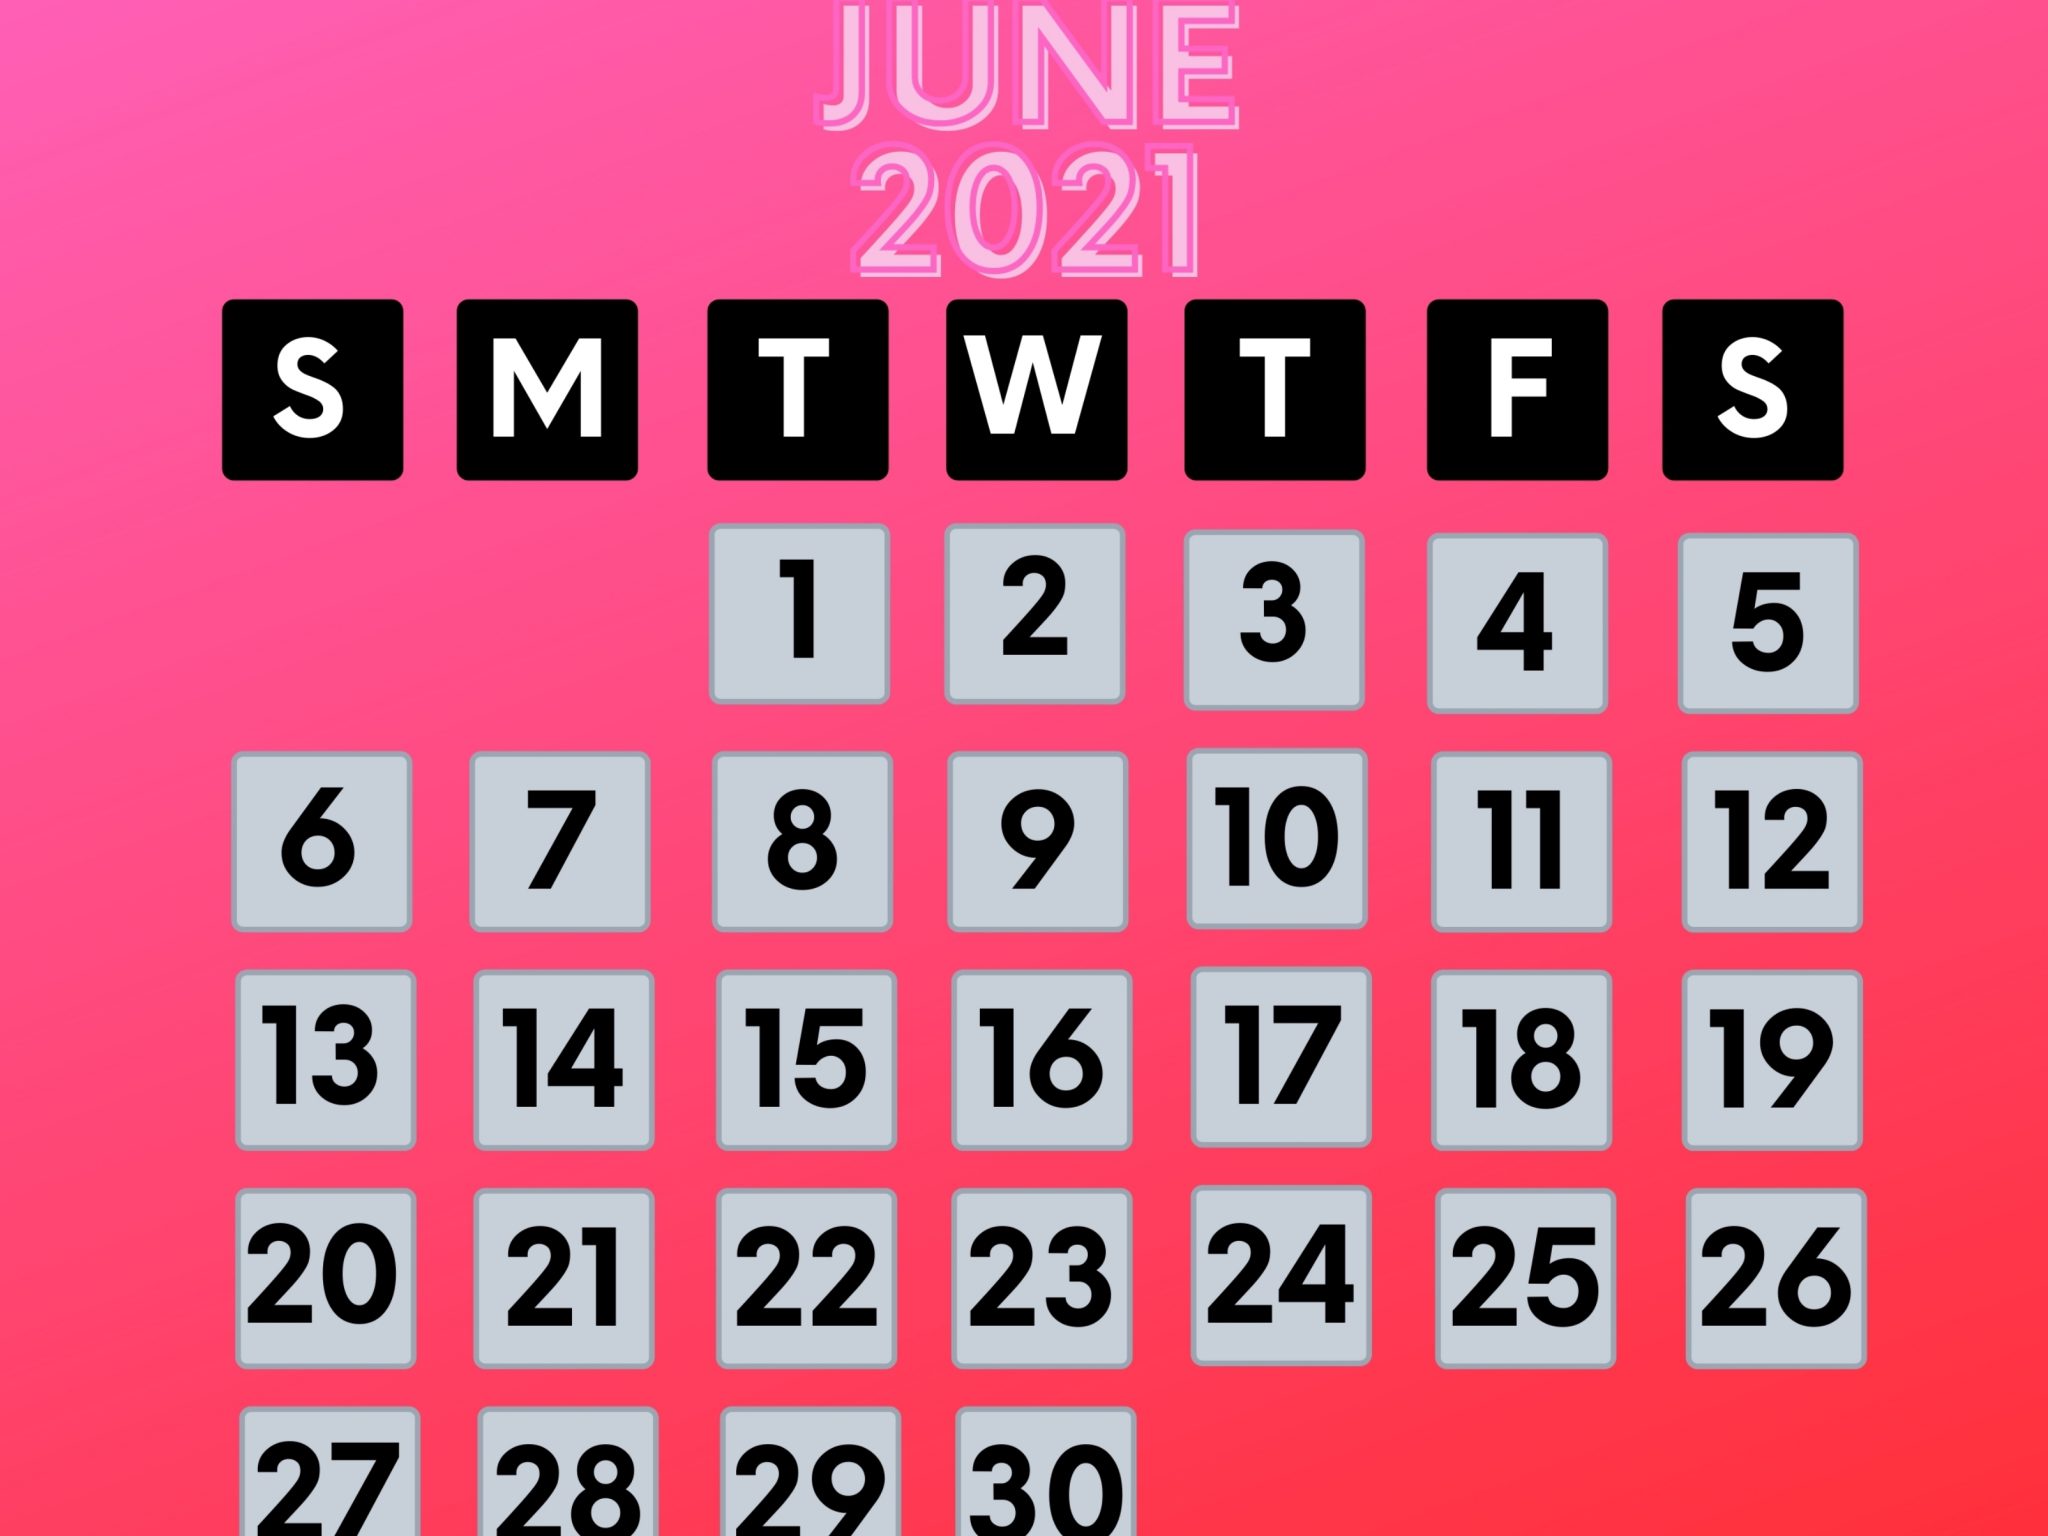 2048x1536 wallpaper June 2021 Calendar iPad Wallpaper 2048x1536 pixels resolution